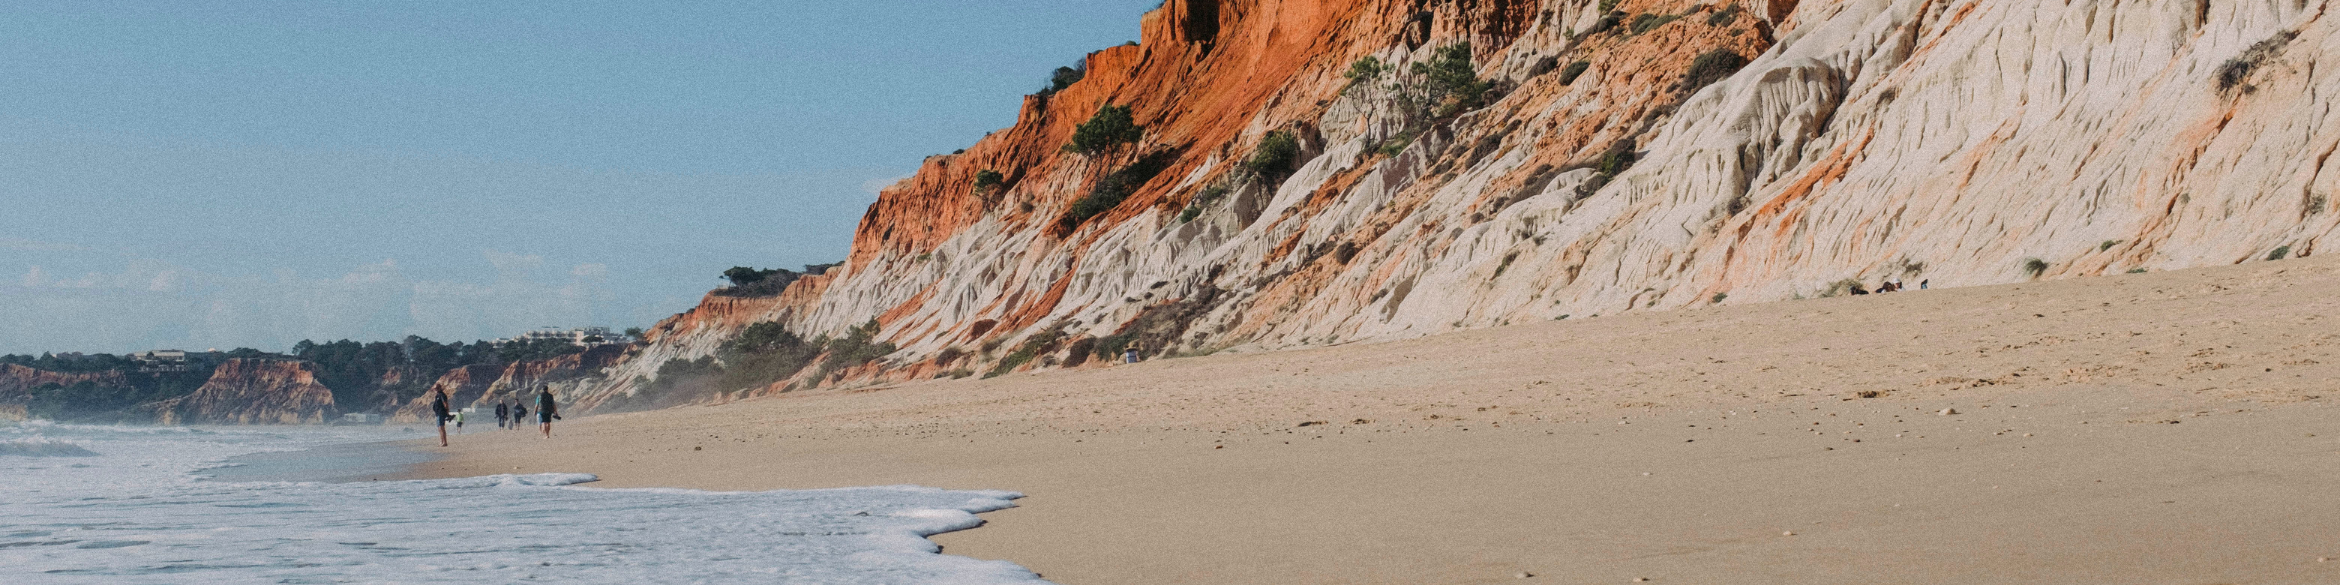 Praia da Falésia, in Albufeira, Algarve, wurde von travellers choice awards als sechstbester strand der welt ausgezeichnet